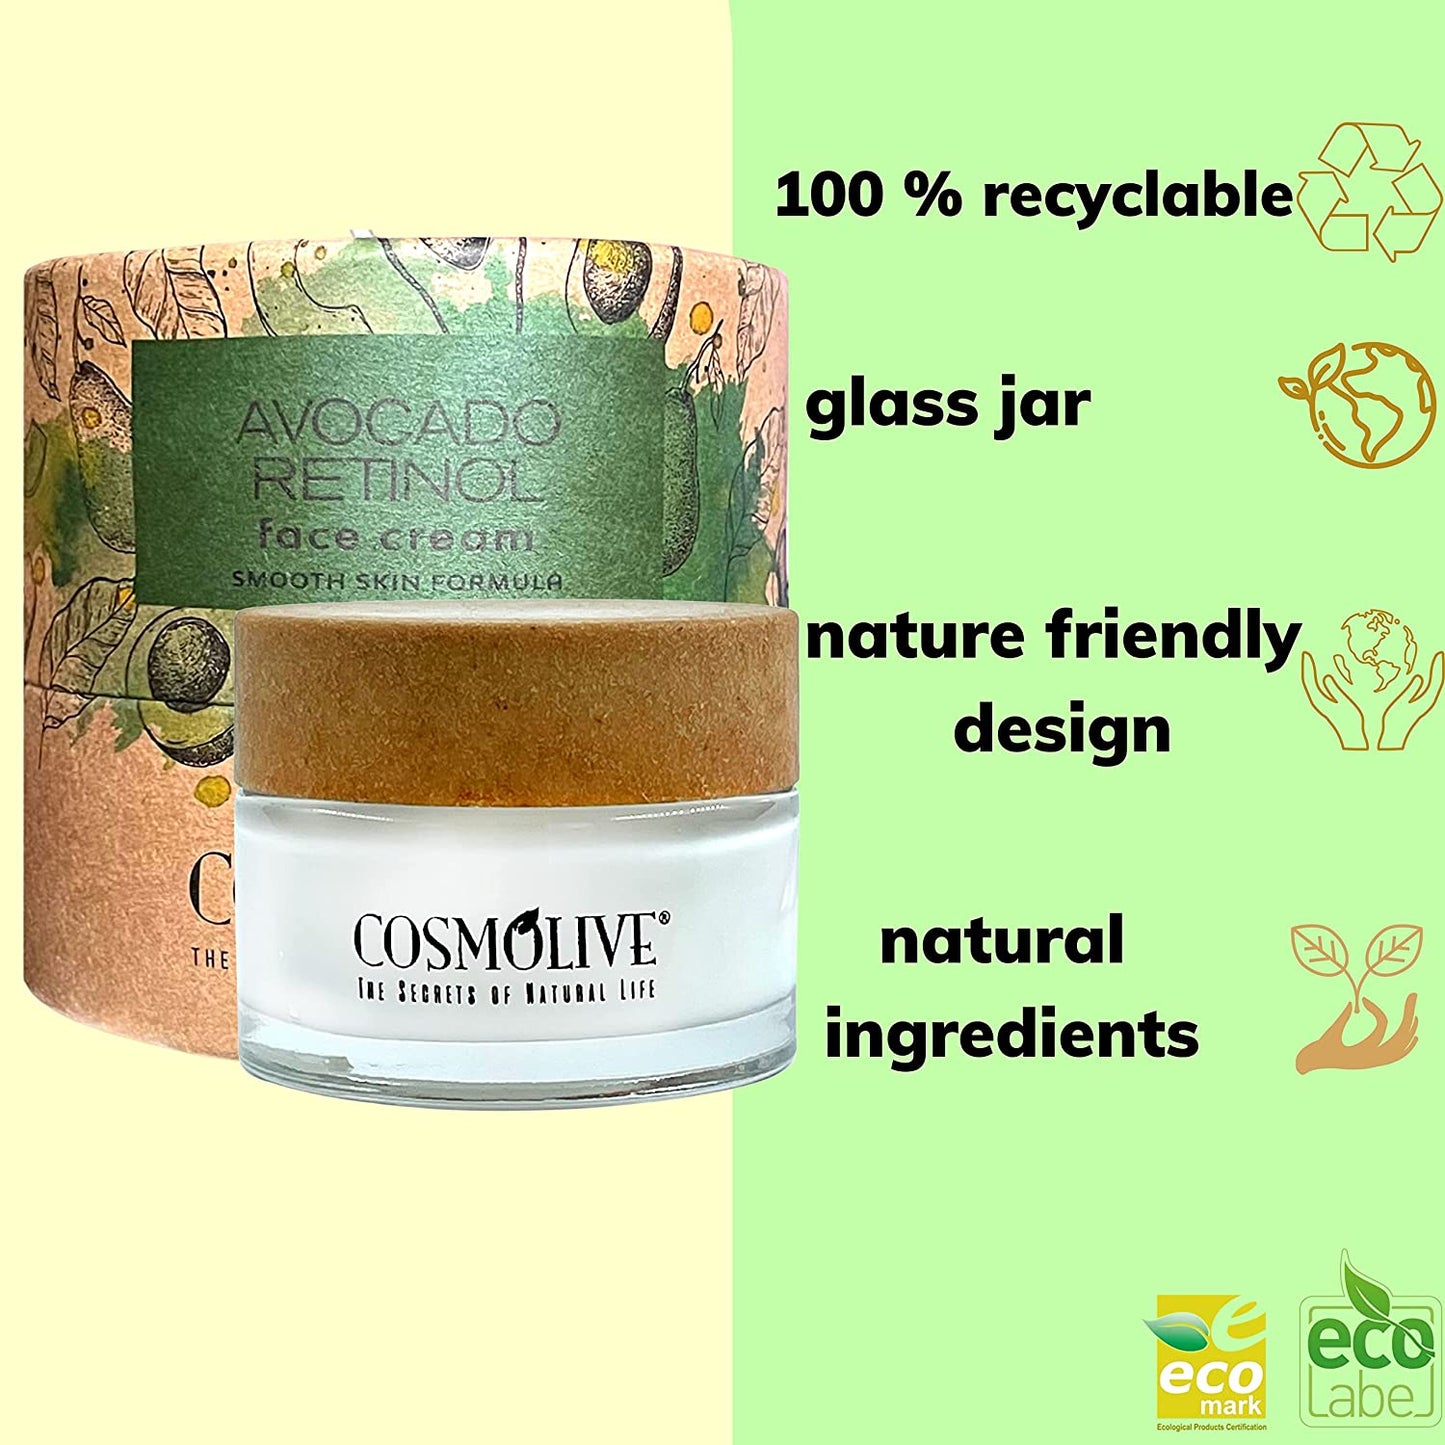 New Retinol Cream for Face with Avocado Oil - Natural Moisturizer Face Cream, Smooth Skin Formula - 1.6 fl. Oz